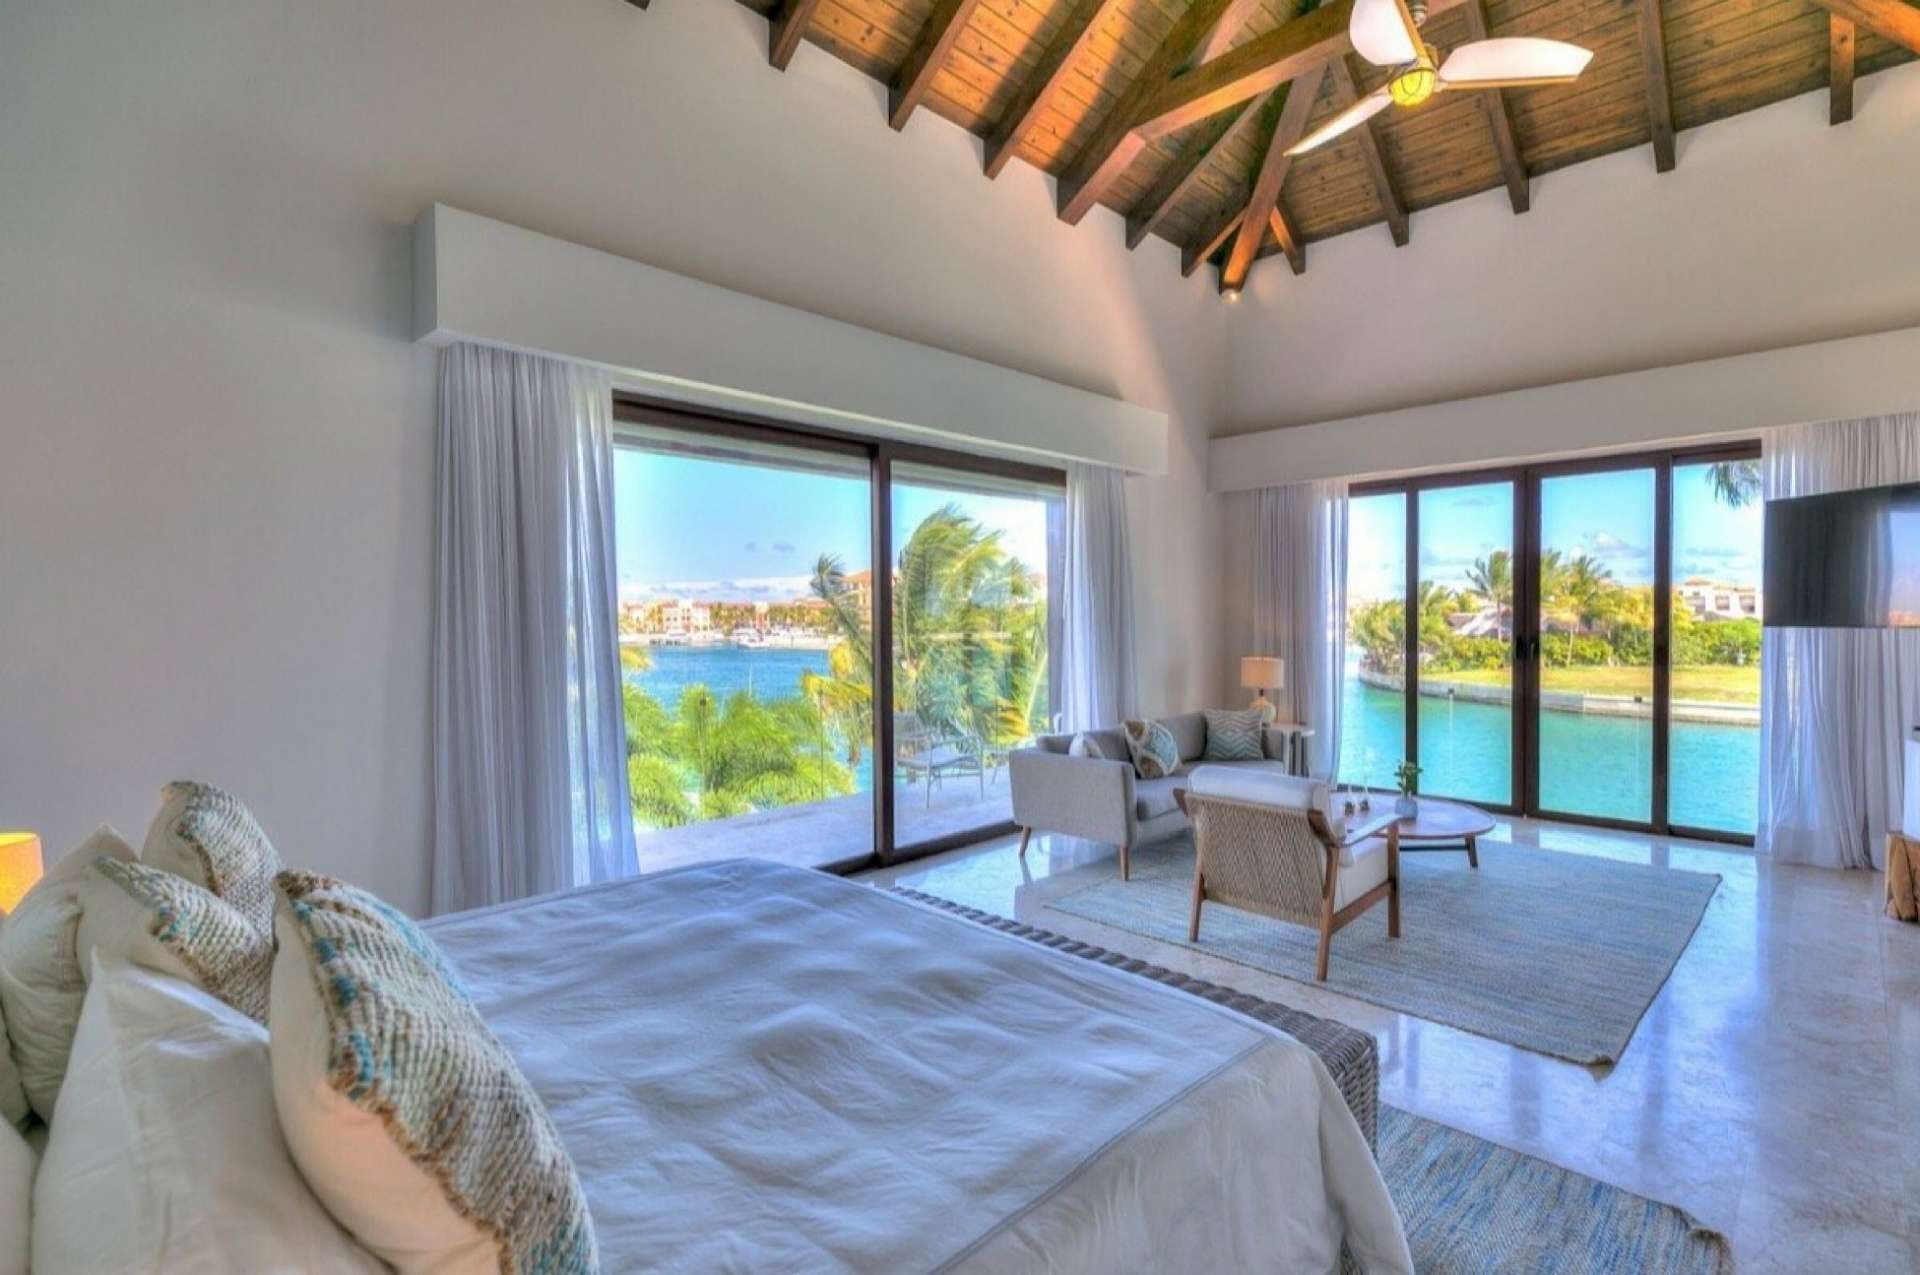 6 Bedroom Villa For Sale Villa Varadero Cap Cana Lp04938 918b961c0cdf100.jpeg